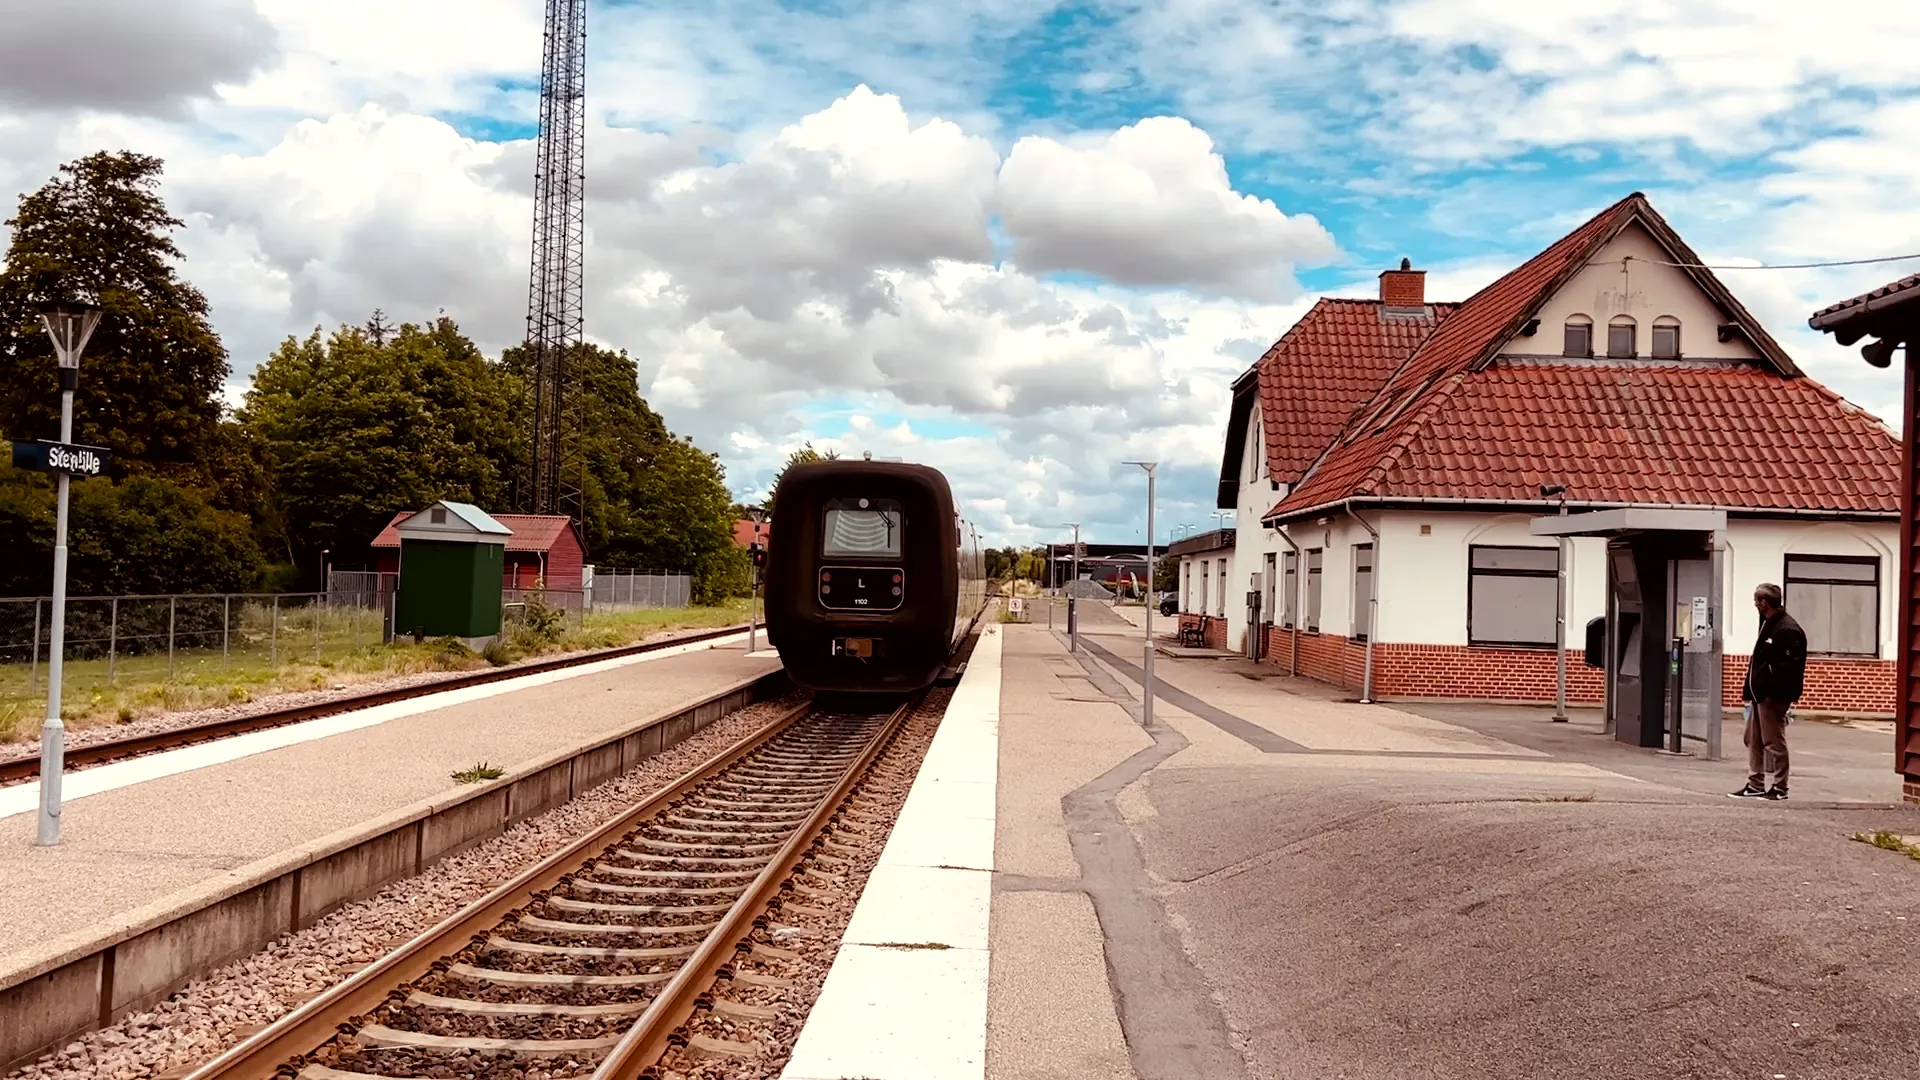 Billede af tog ud for Stenlille Trinbræt.